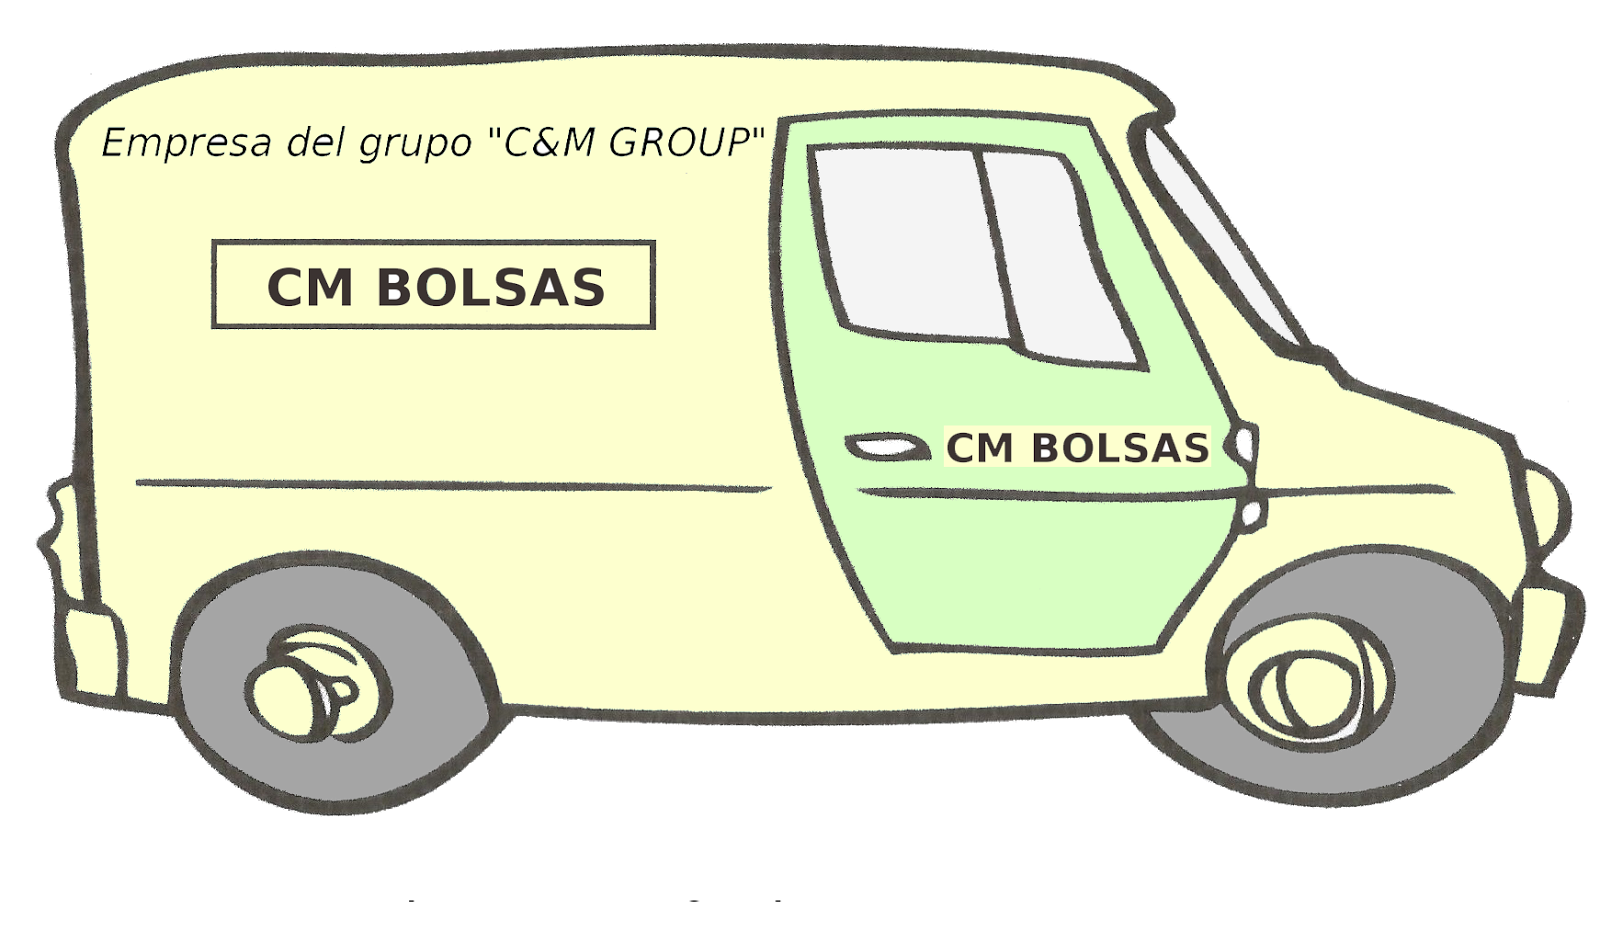 CM BOLSAS